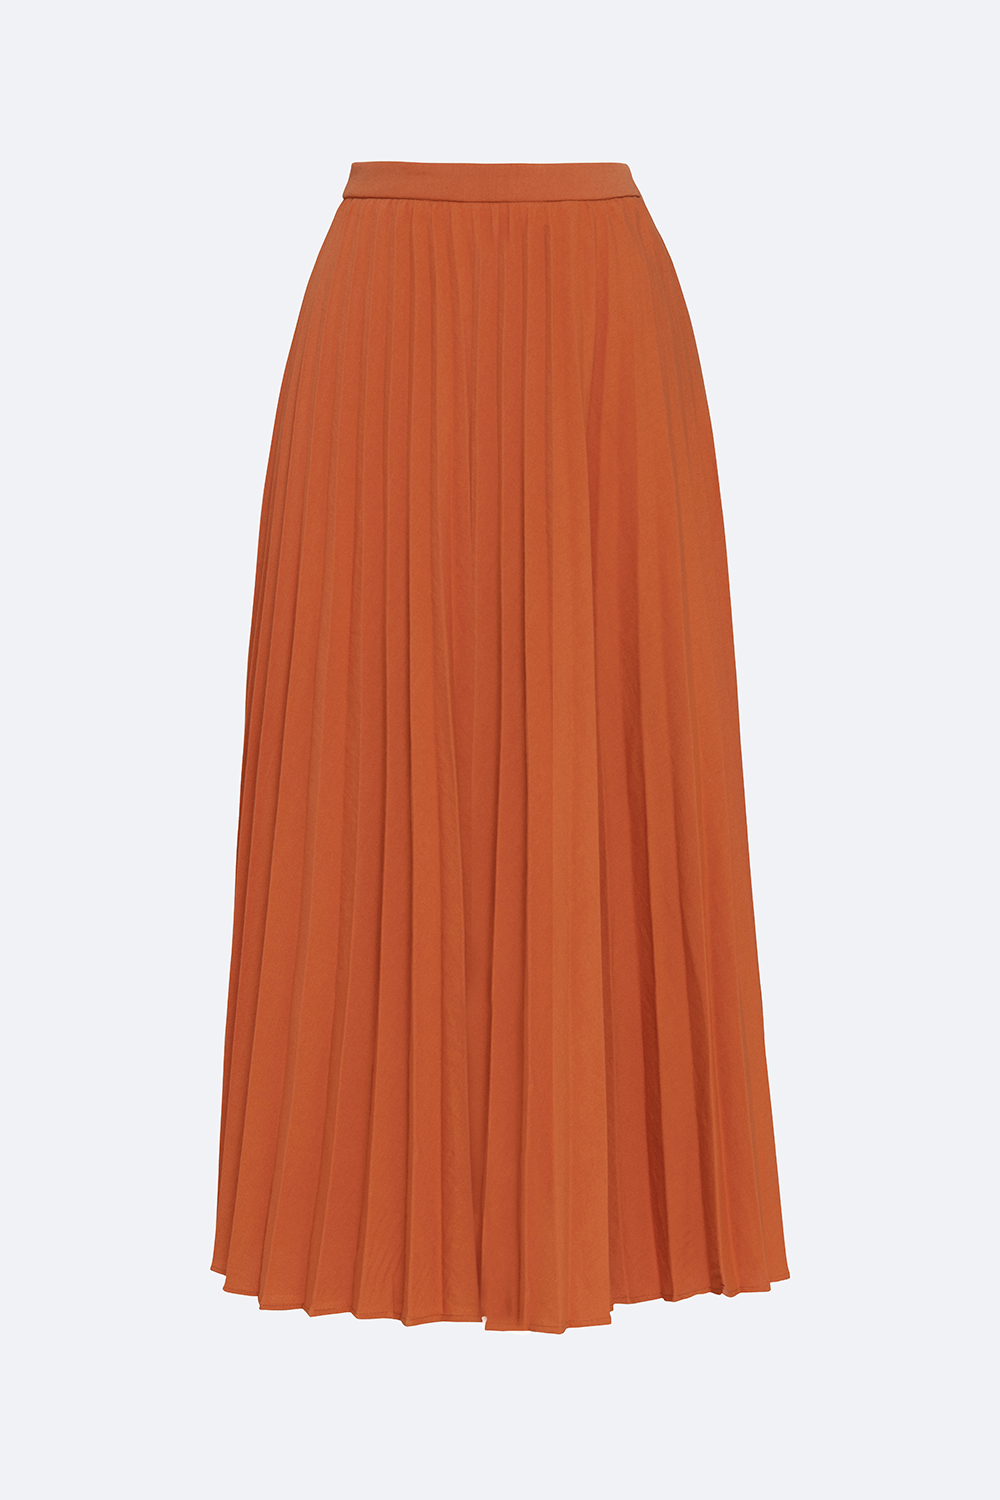 Chân váy xếp ly dài màu đen CV06-02 | Thời trang công sở K&K Fashion